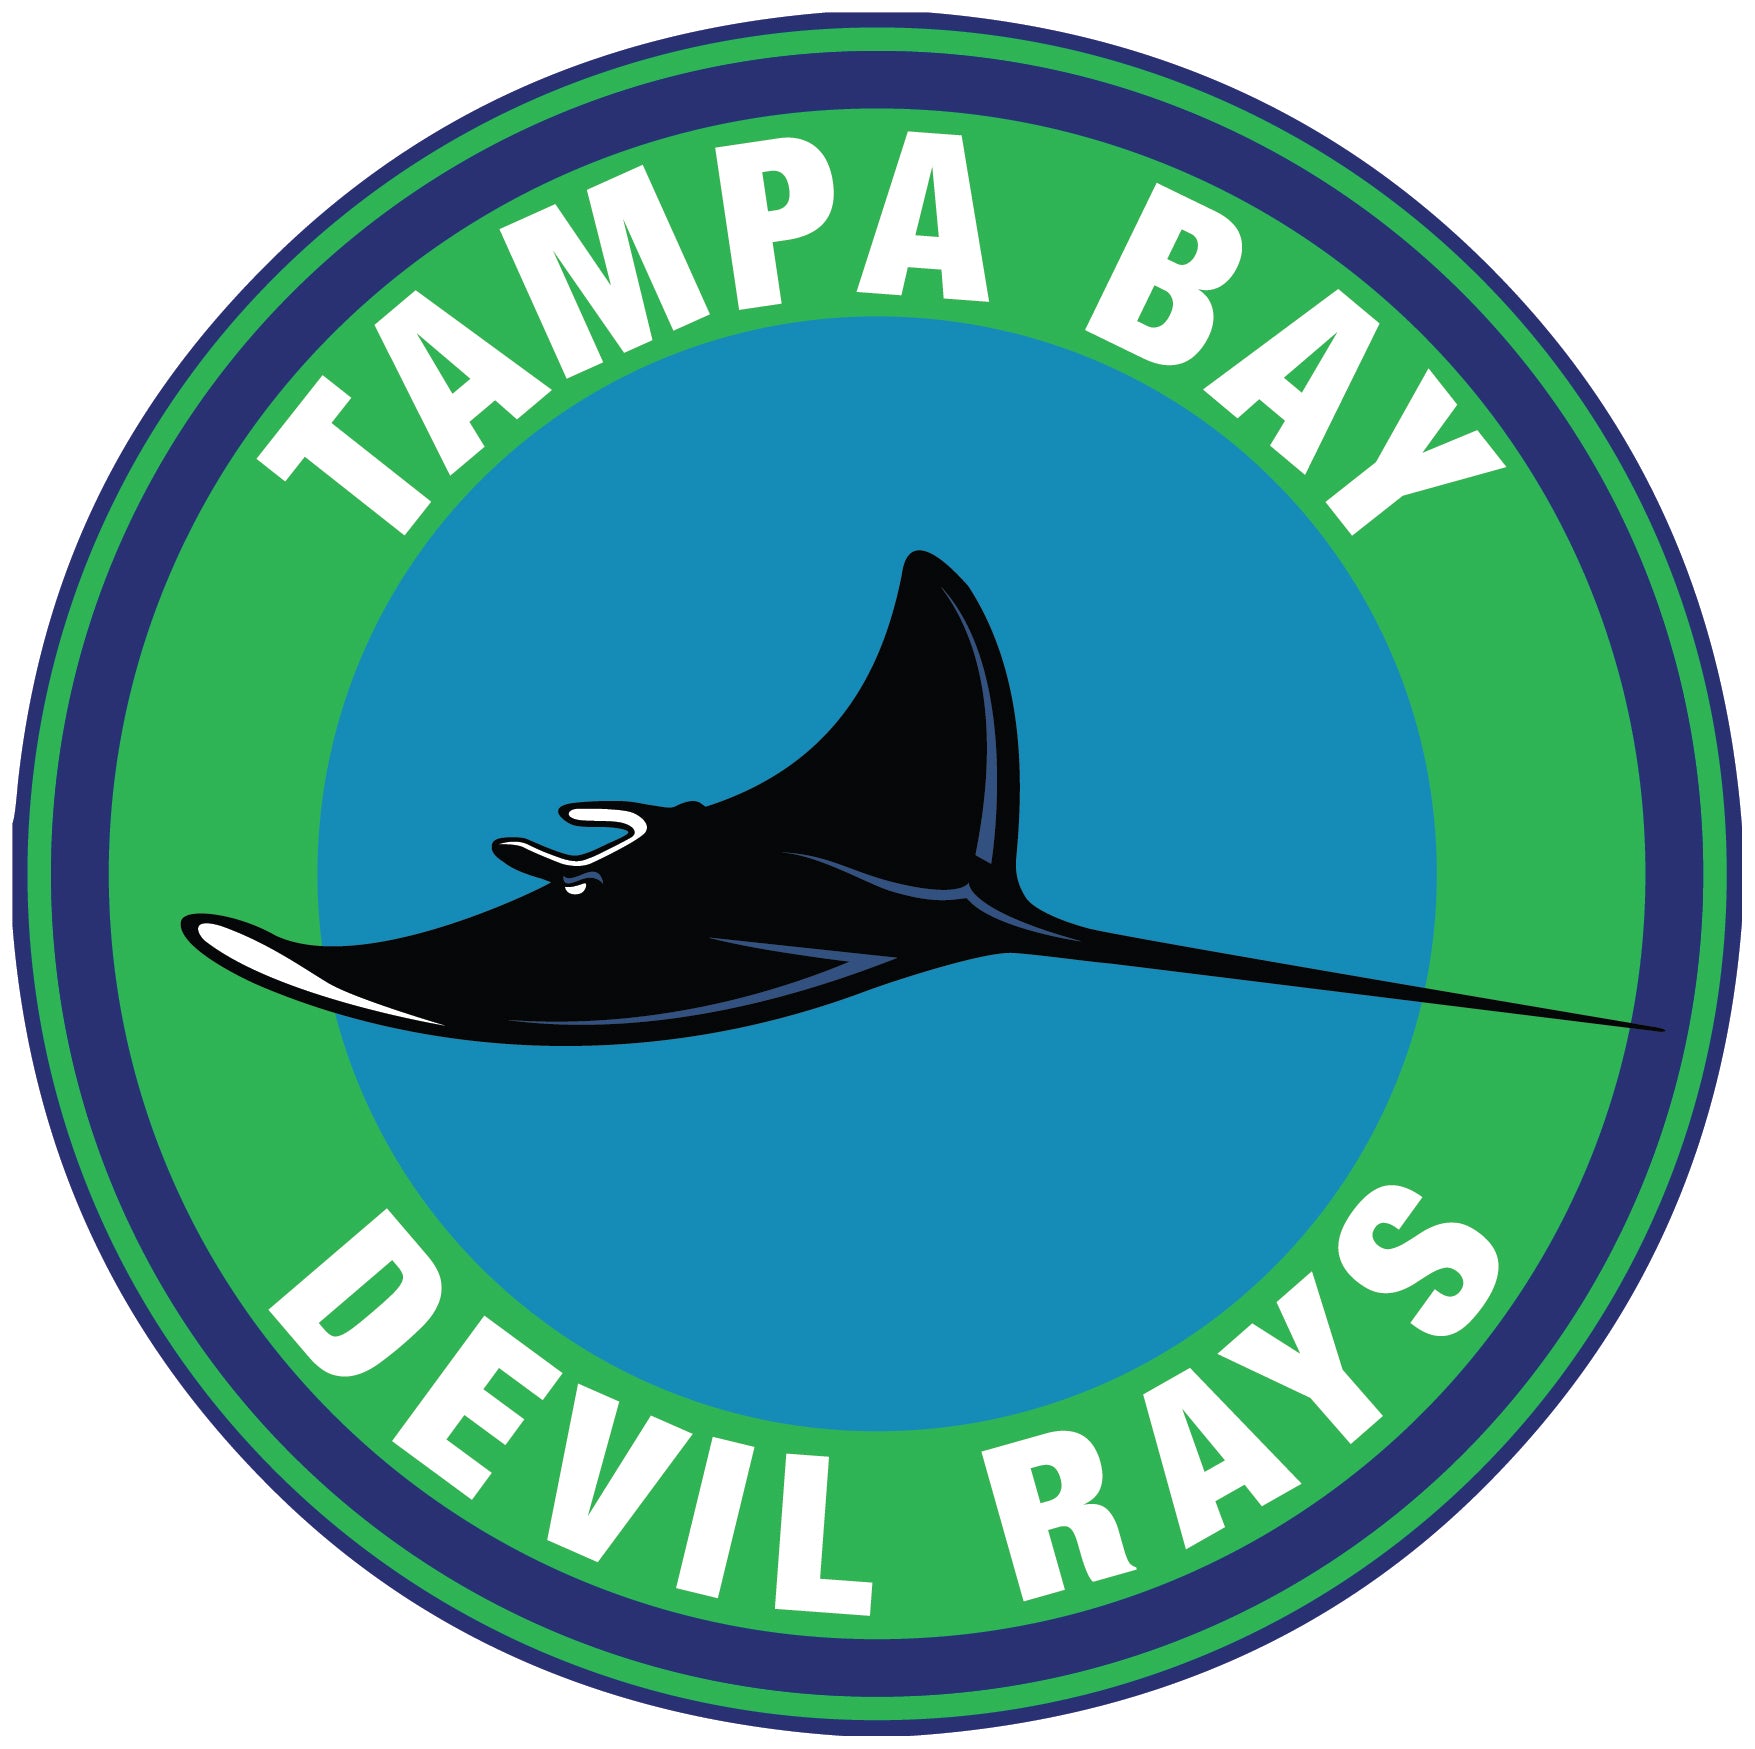 Tampa Bay Rays Throwback logo Circle Logo Vinyl Decal Sticker 5 sizes!